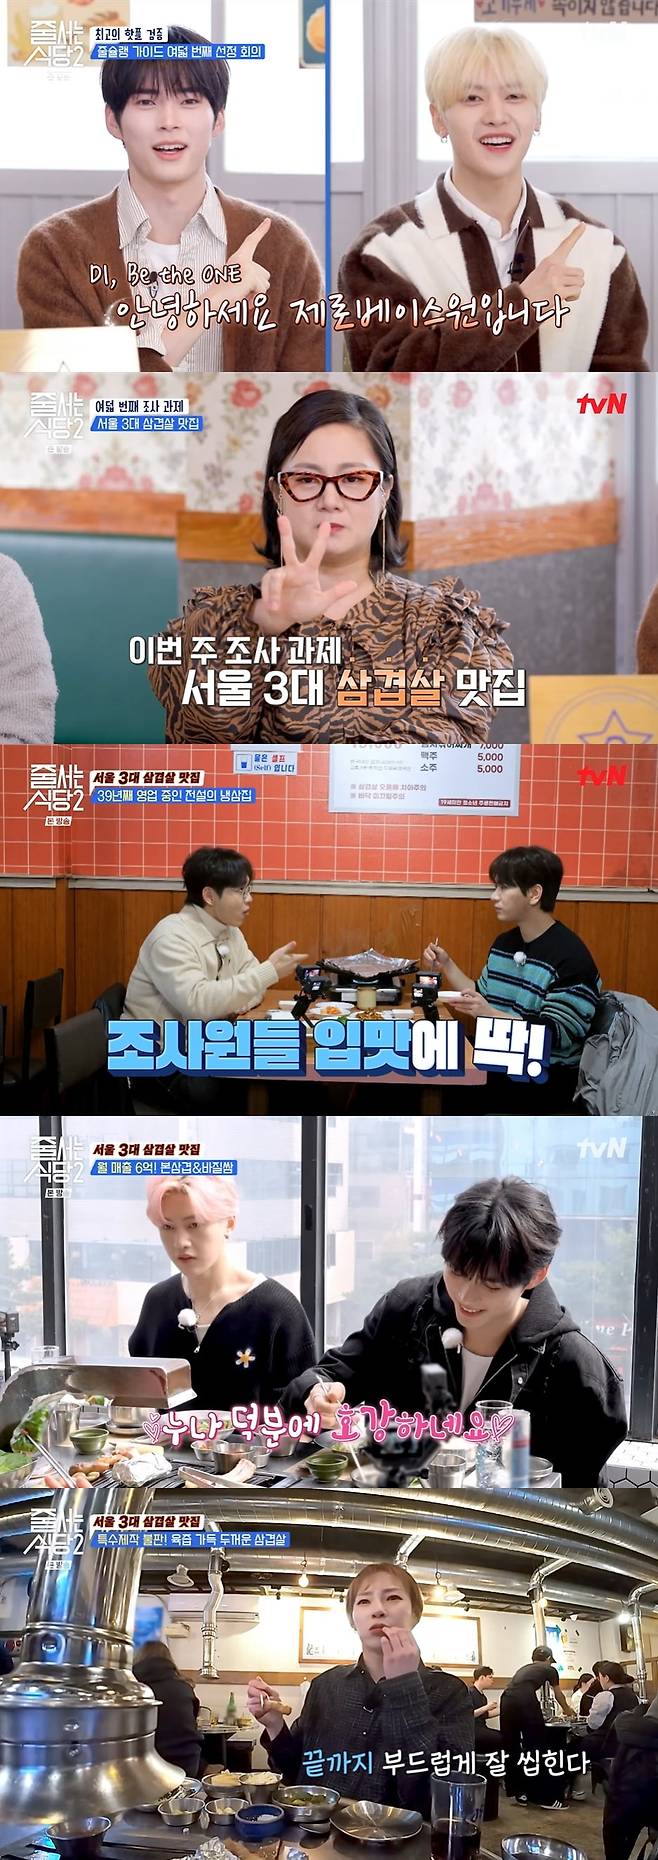 사진 제공: tvN <줄 서는 식당2> 영상 캡처